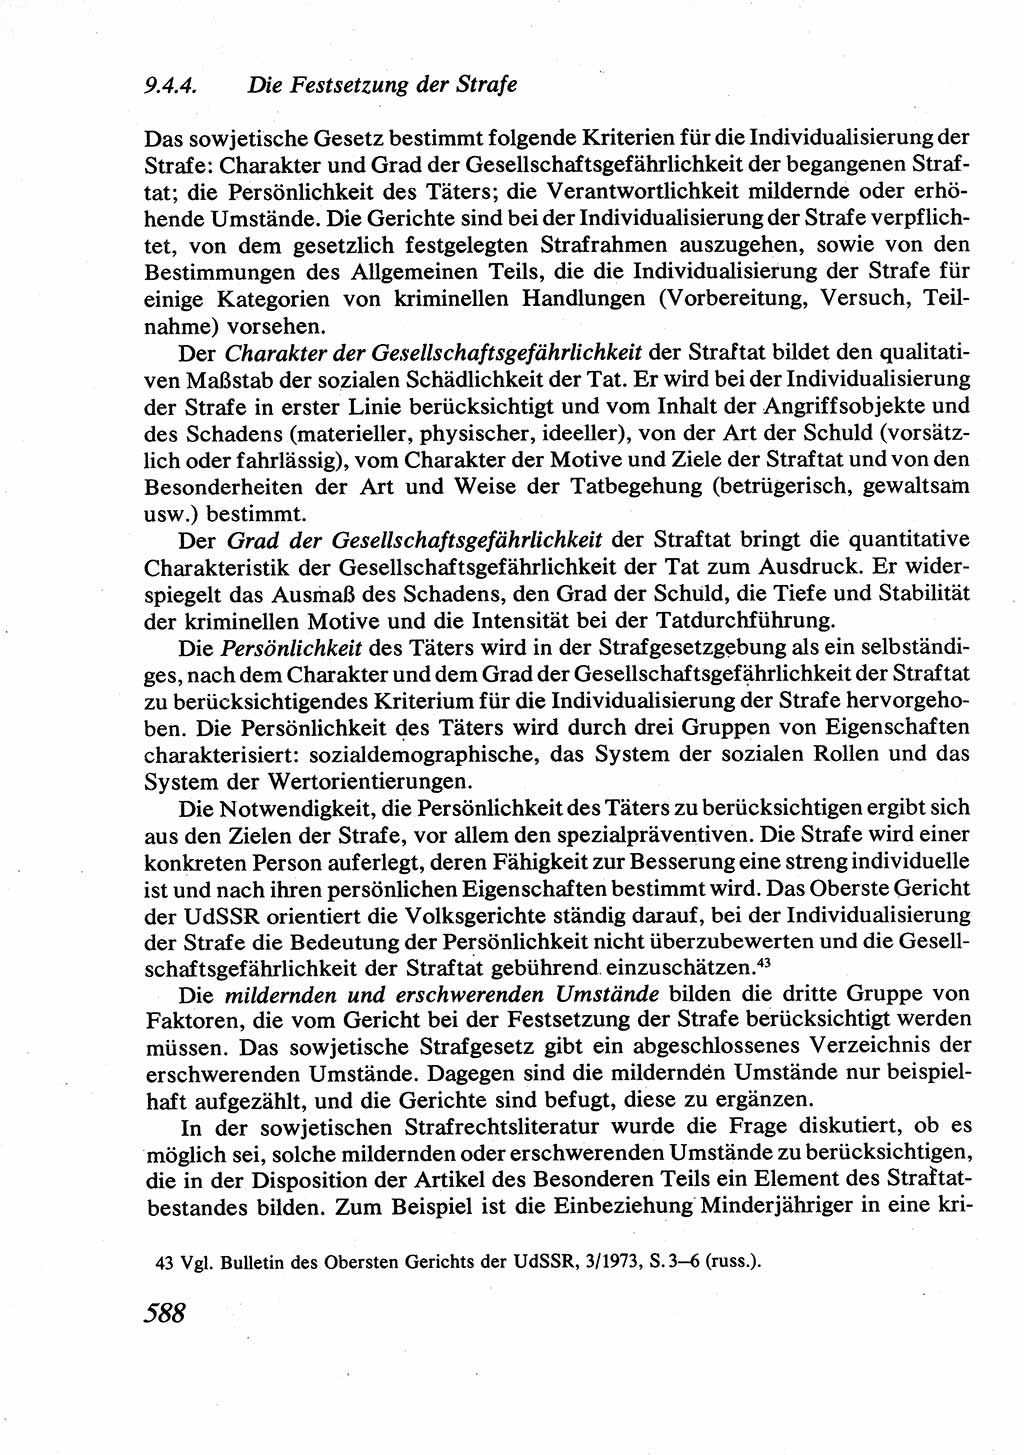 Strafrecht [Deutsche Demokratische Republik (DDR)], Allgemeiner Teil, Lehrbuch 1976, Seite 588 (Strafr. DDR AT Lb. 1976, S. 588)